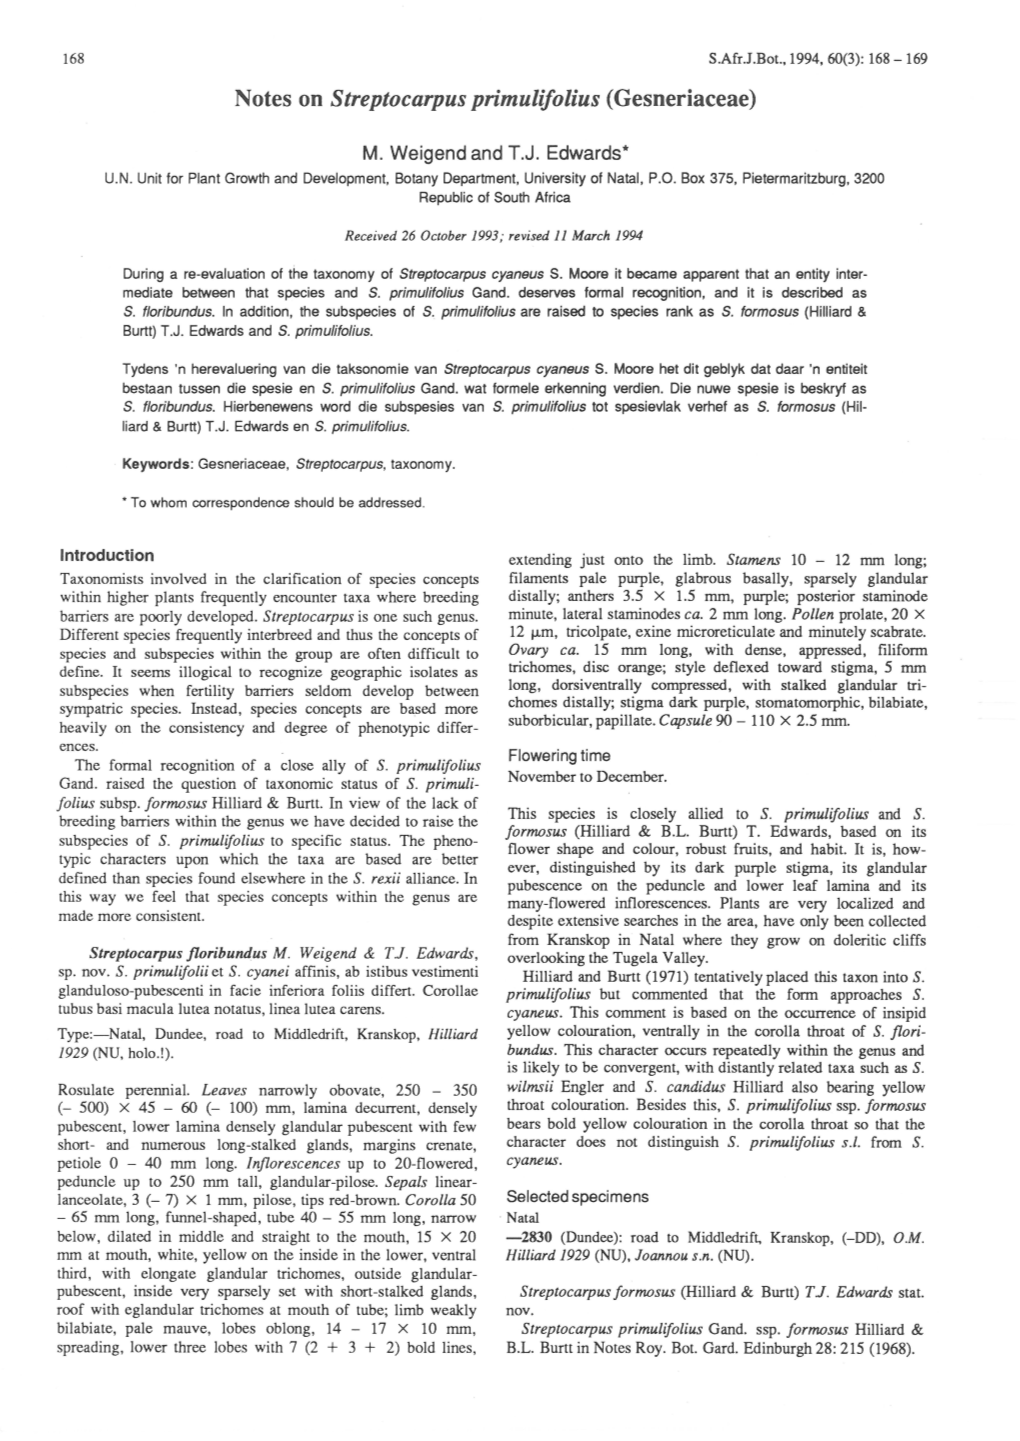 Notes on Streptocarpus Primulifolius (Gesneriaceae)